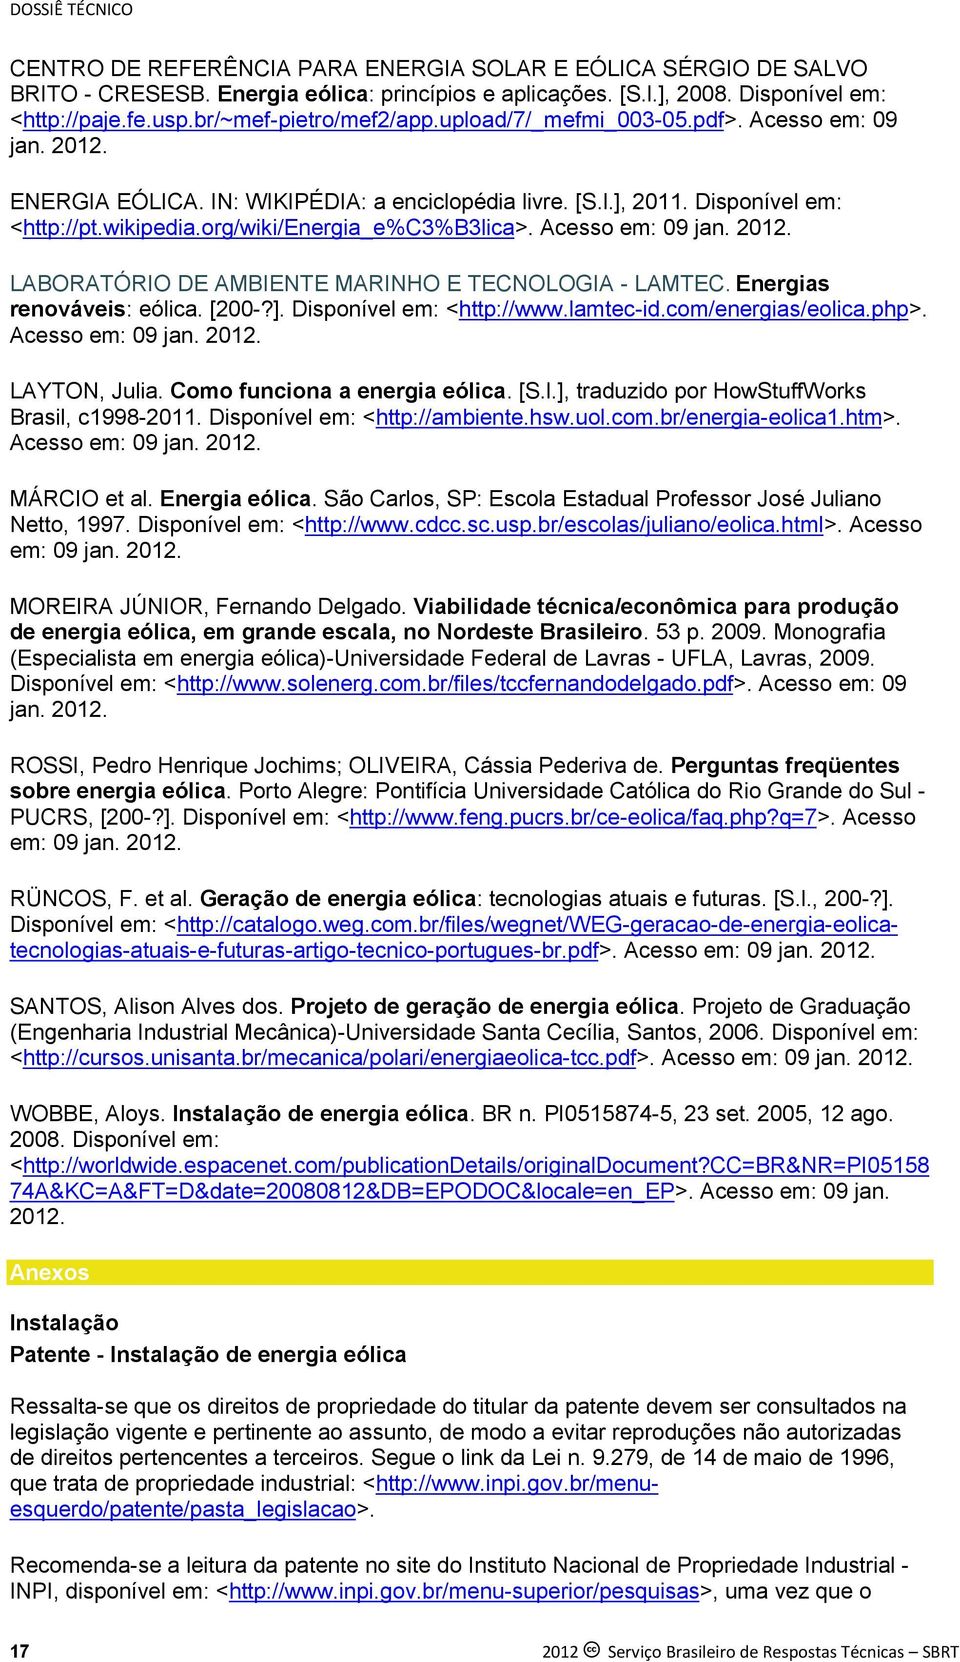 org/wiki/energia_e%c3%b3lica>. Acesso em: 09 jan. 2012. LABORATÓRIO DE AMBIENTE MARINHO E TECNOLOGIA - LAMTEC. Energias renováveis: eólica. [200-?]. Disponível em: <http://www.lamtec-id.